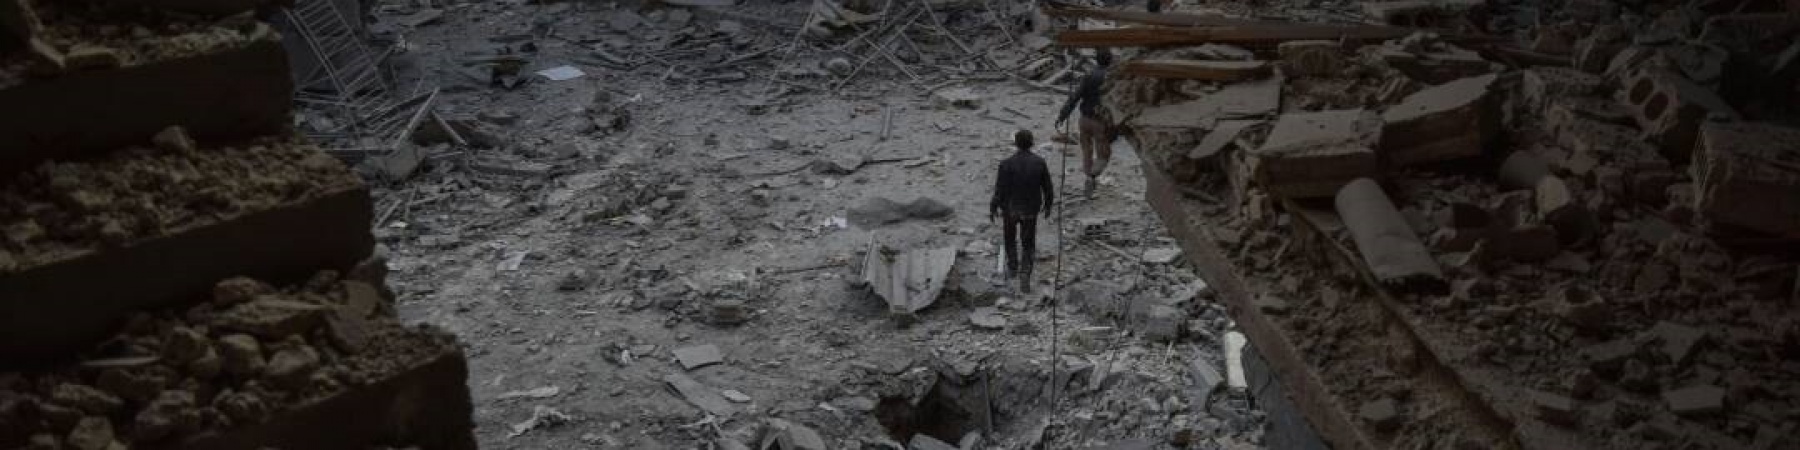 foto dall alto di un quartiere in Siria bombardato, nel sentro un uomo che cammina